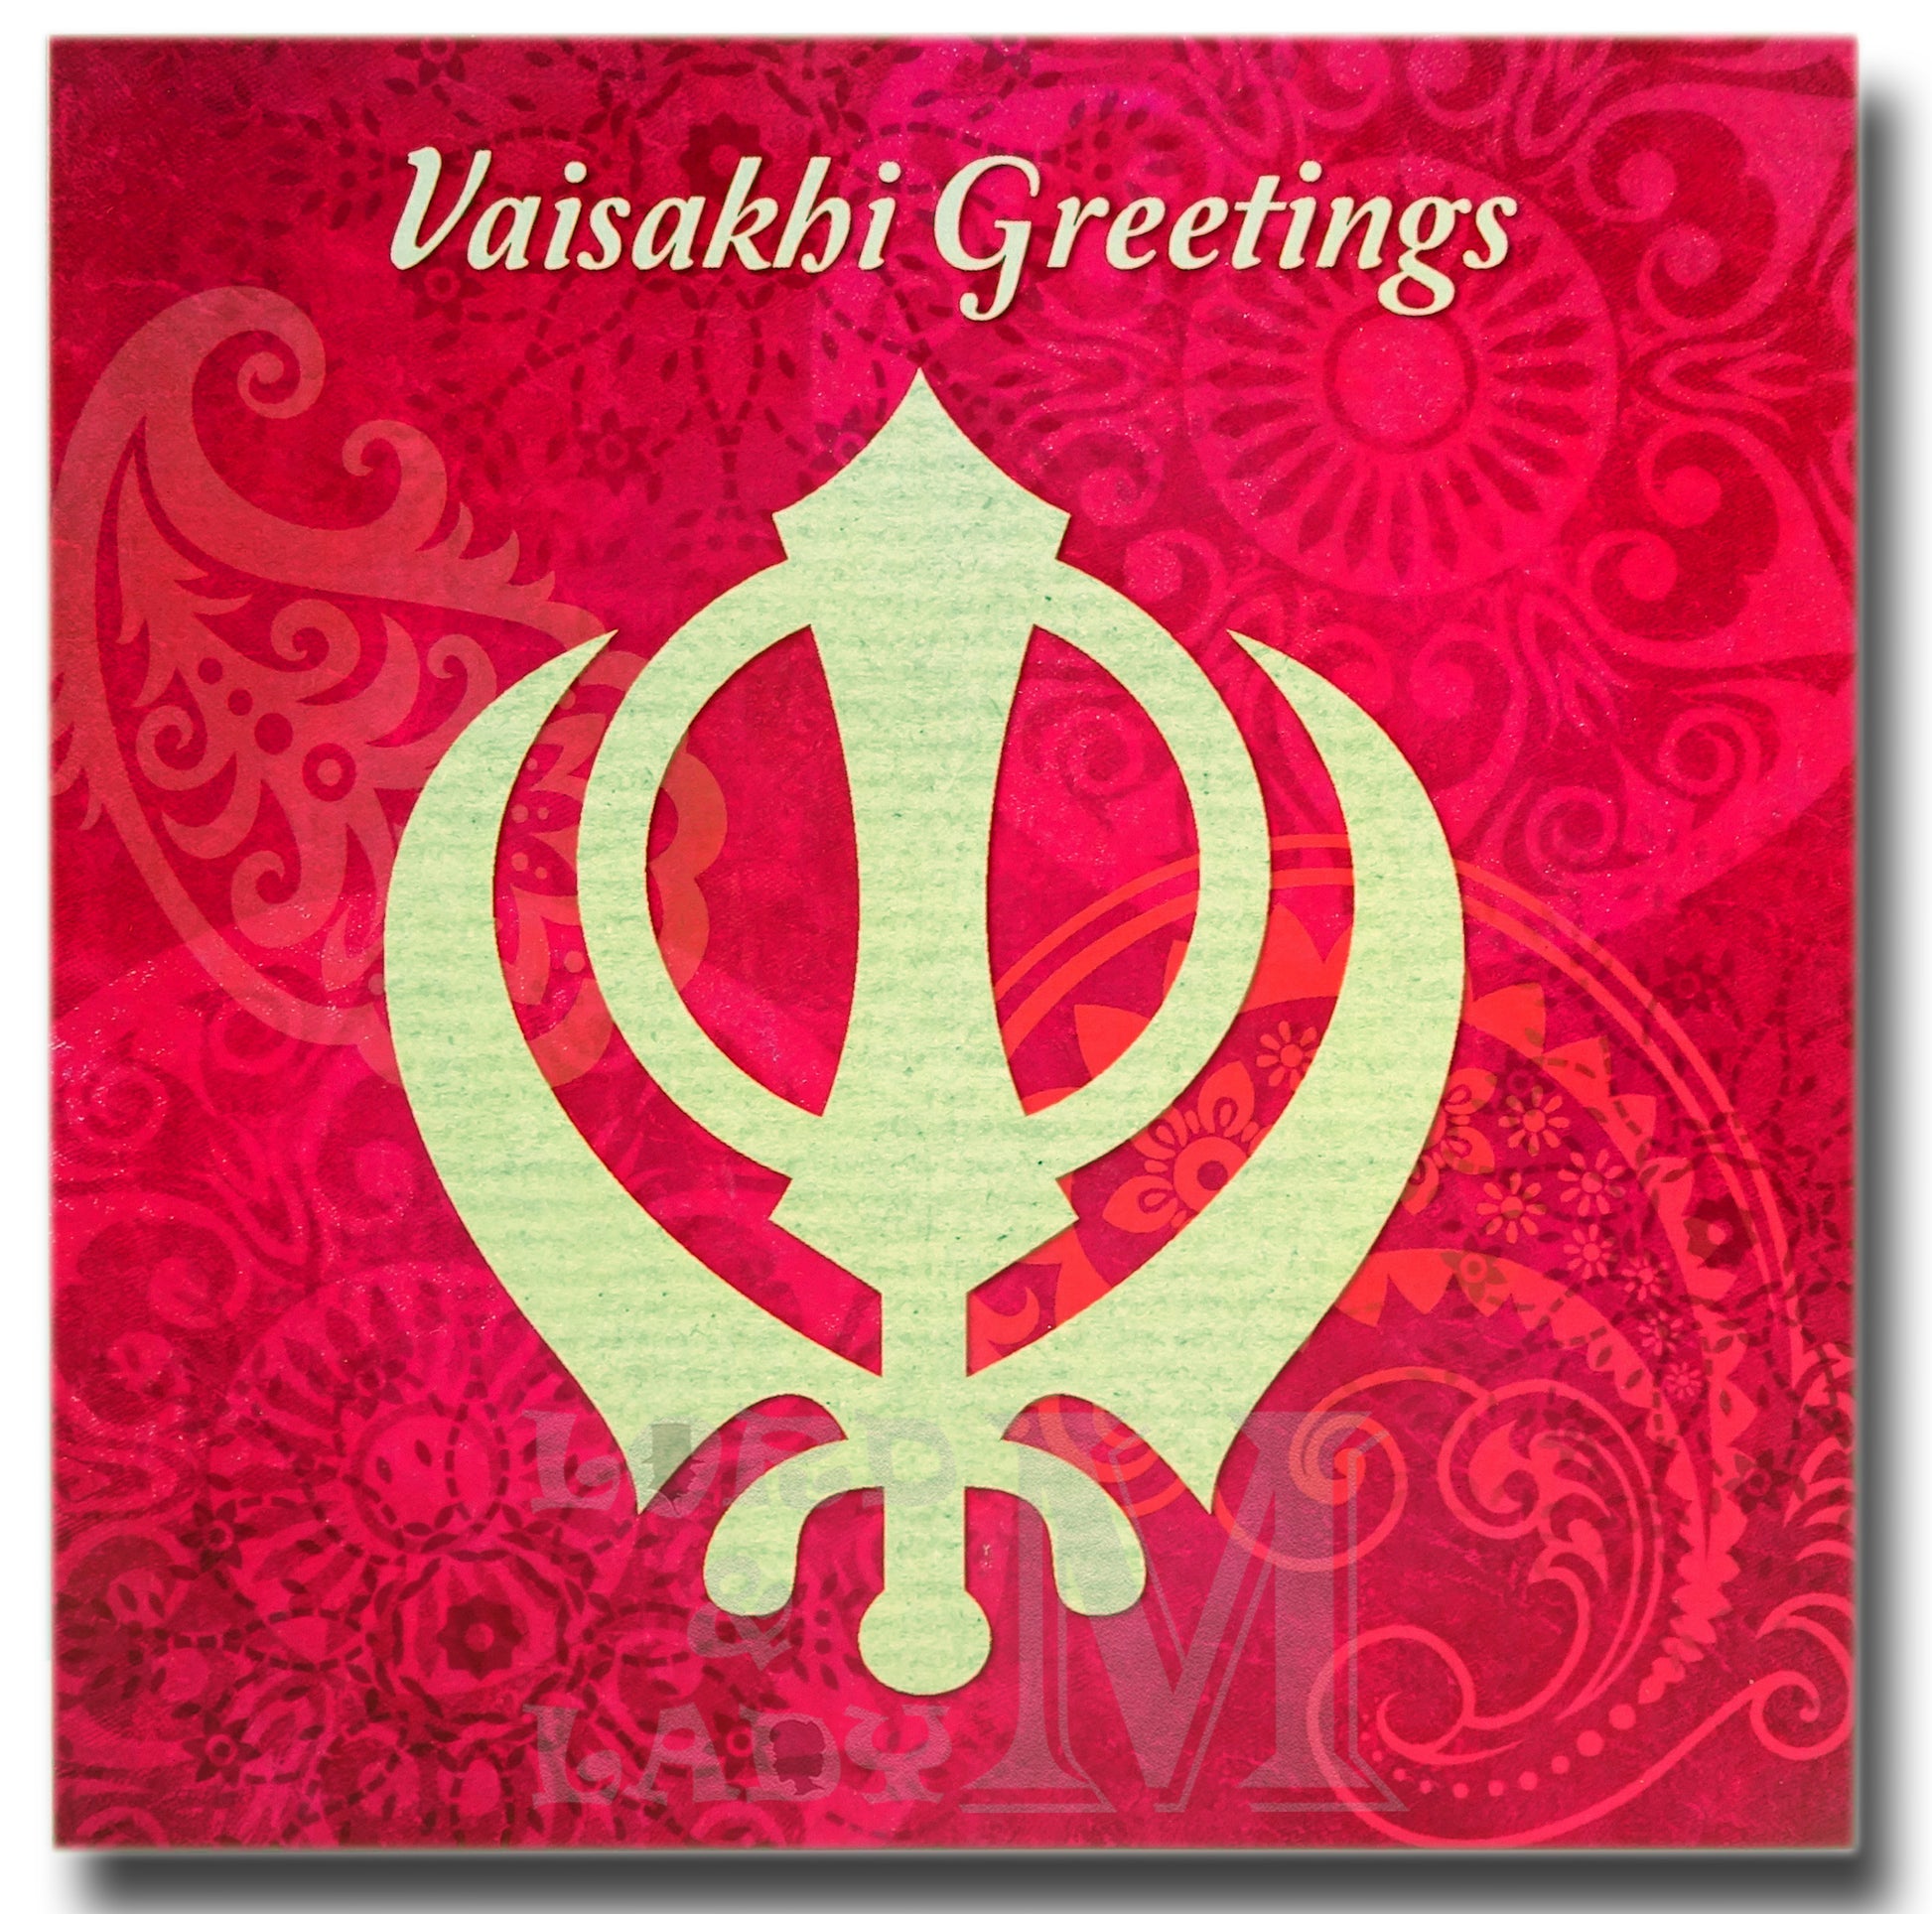 15cm - Vaisakhi Greetings - Pink With Khanda - DV